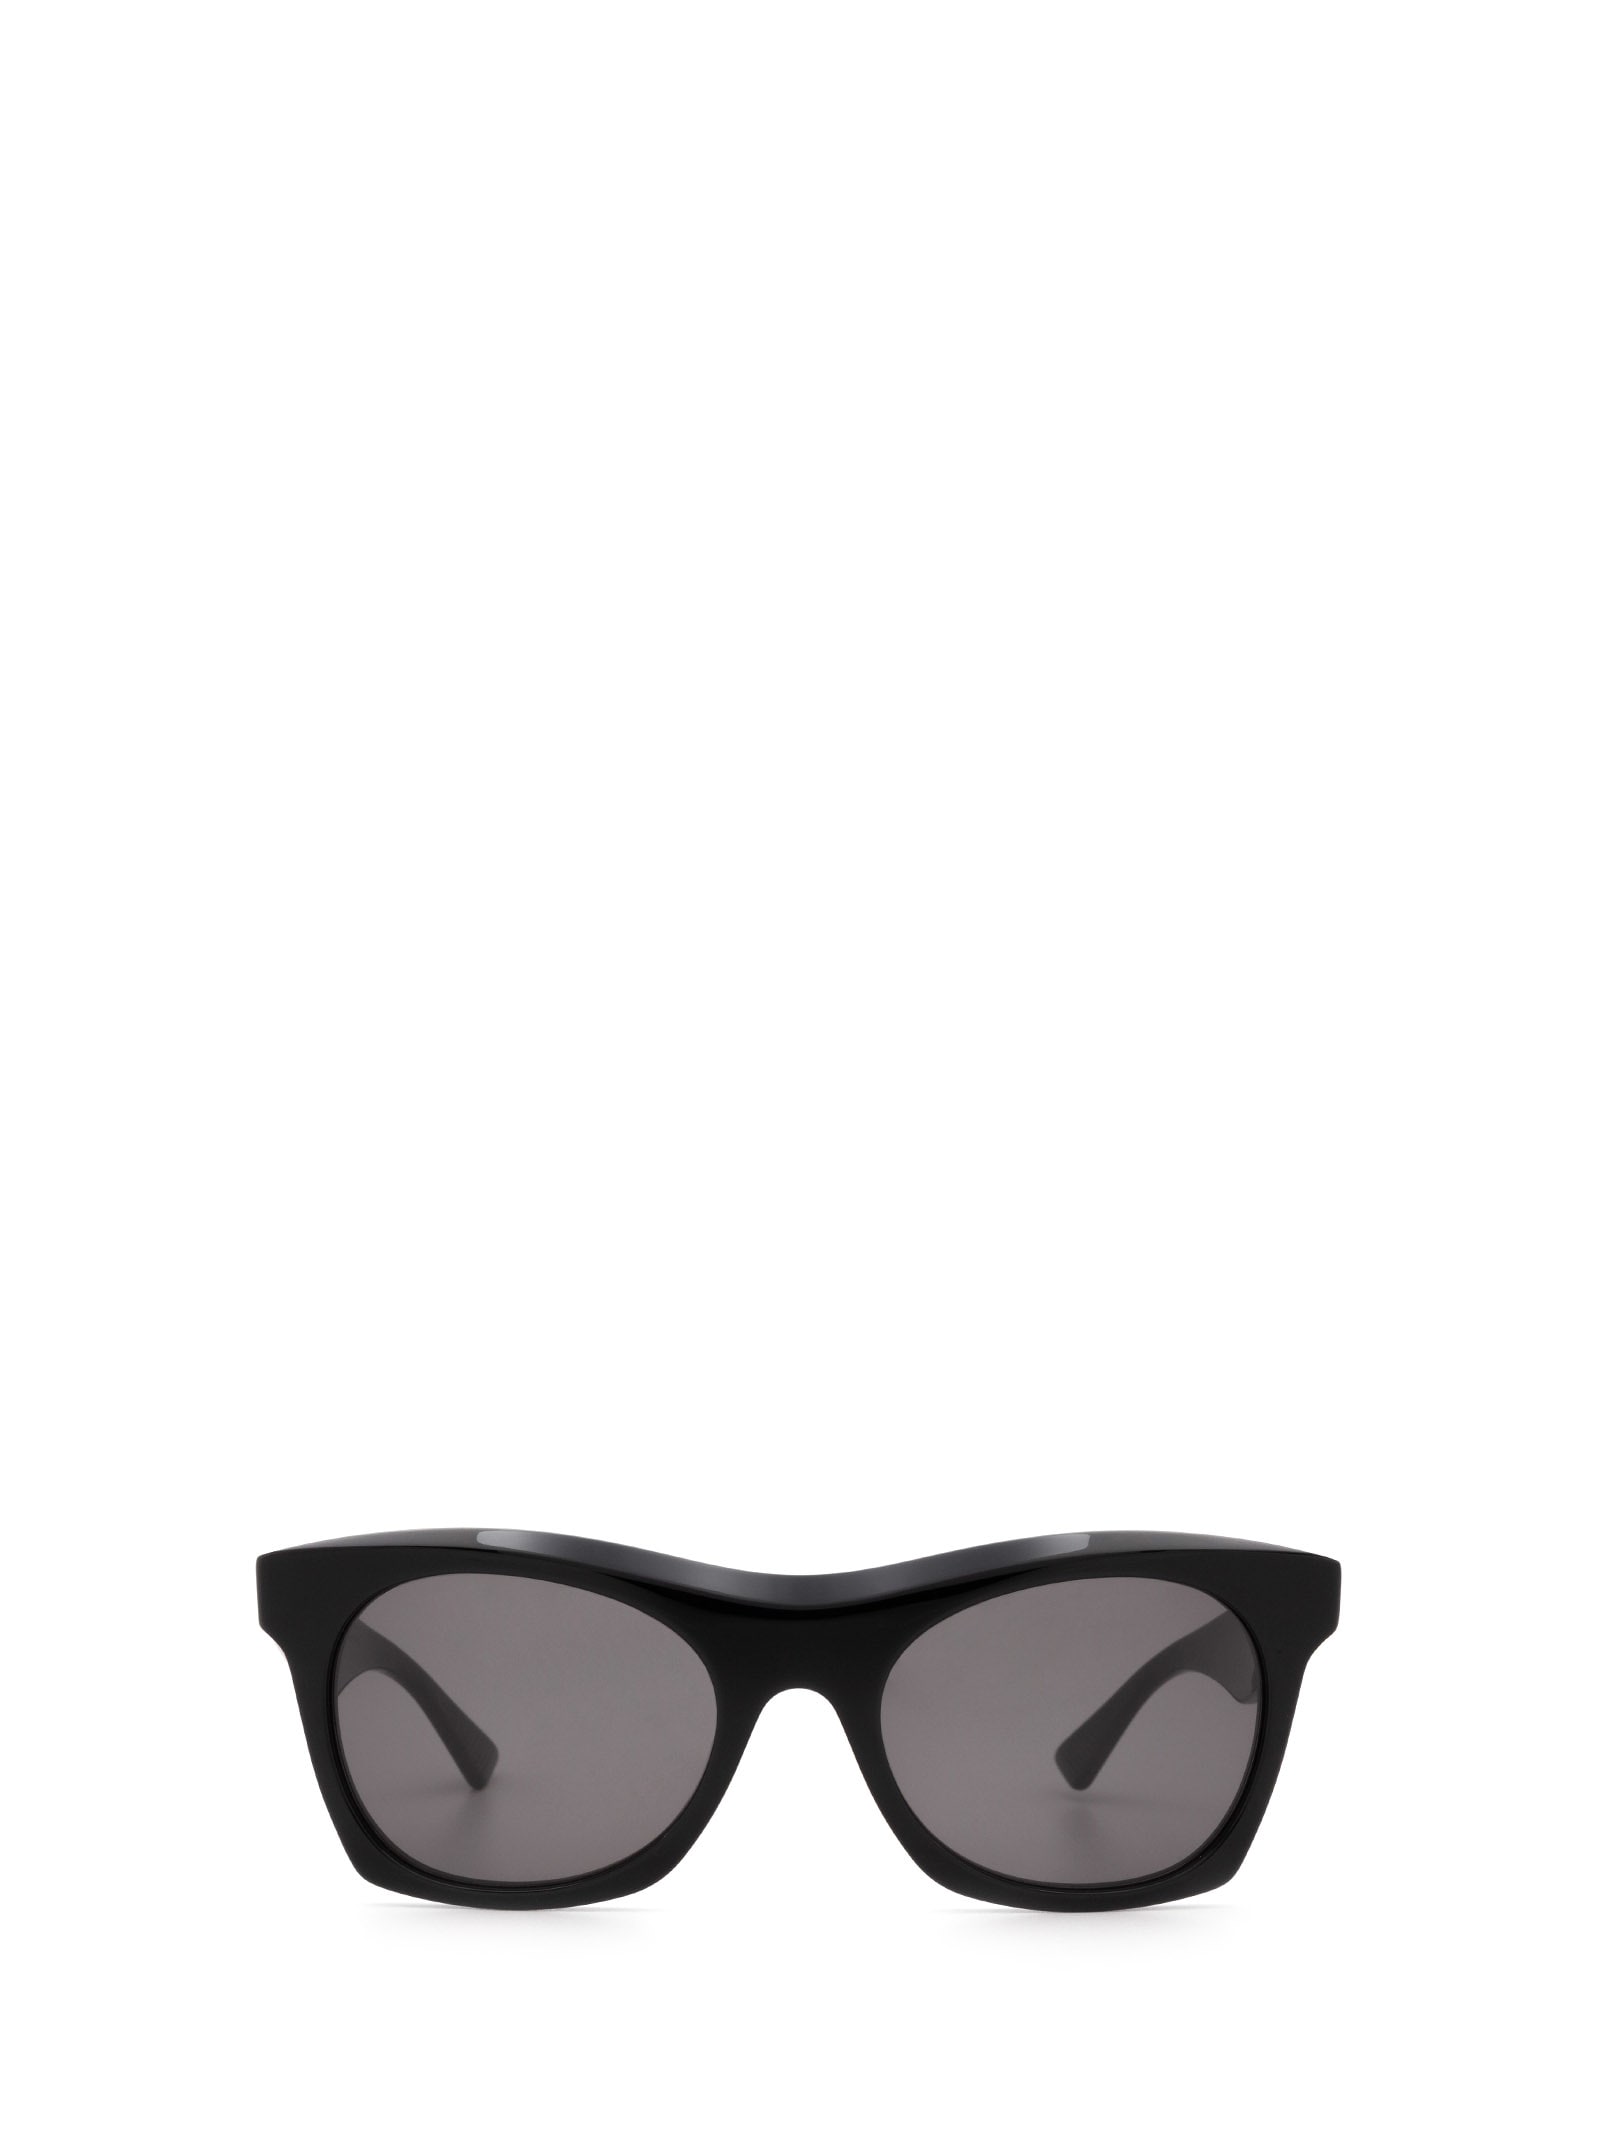 Bottega Veneta Bottega Veneta Bv1061s Black Sunglasses